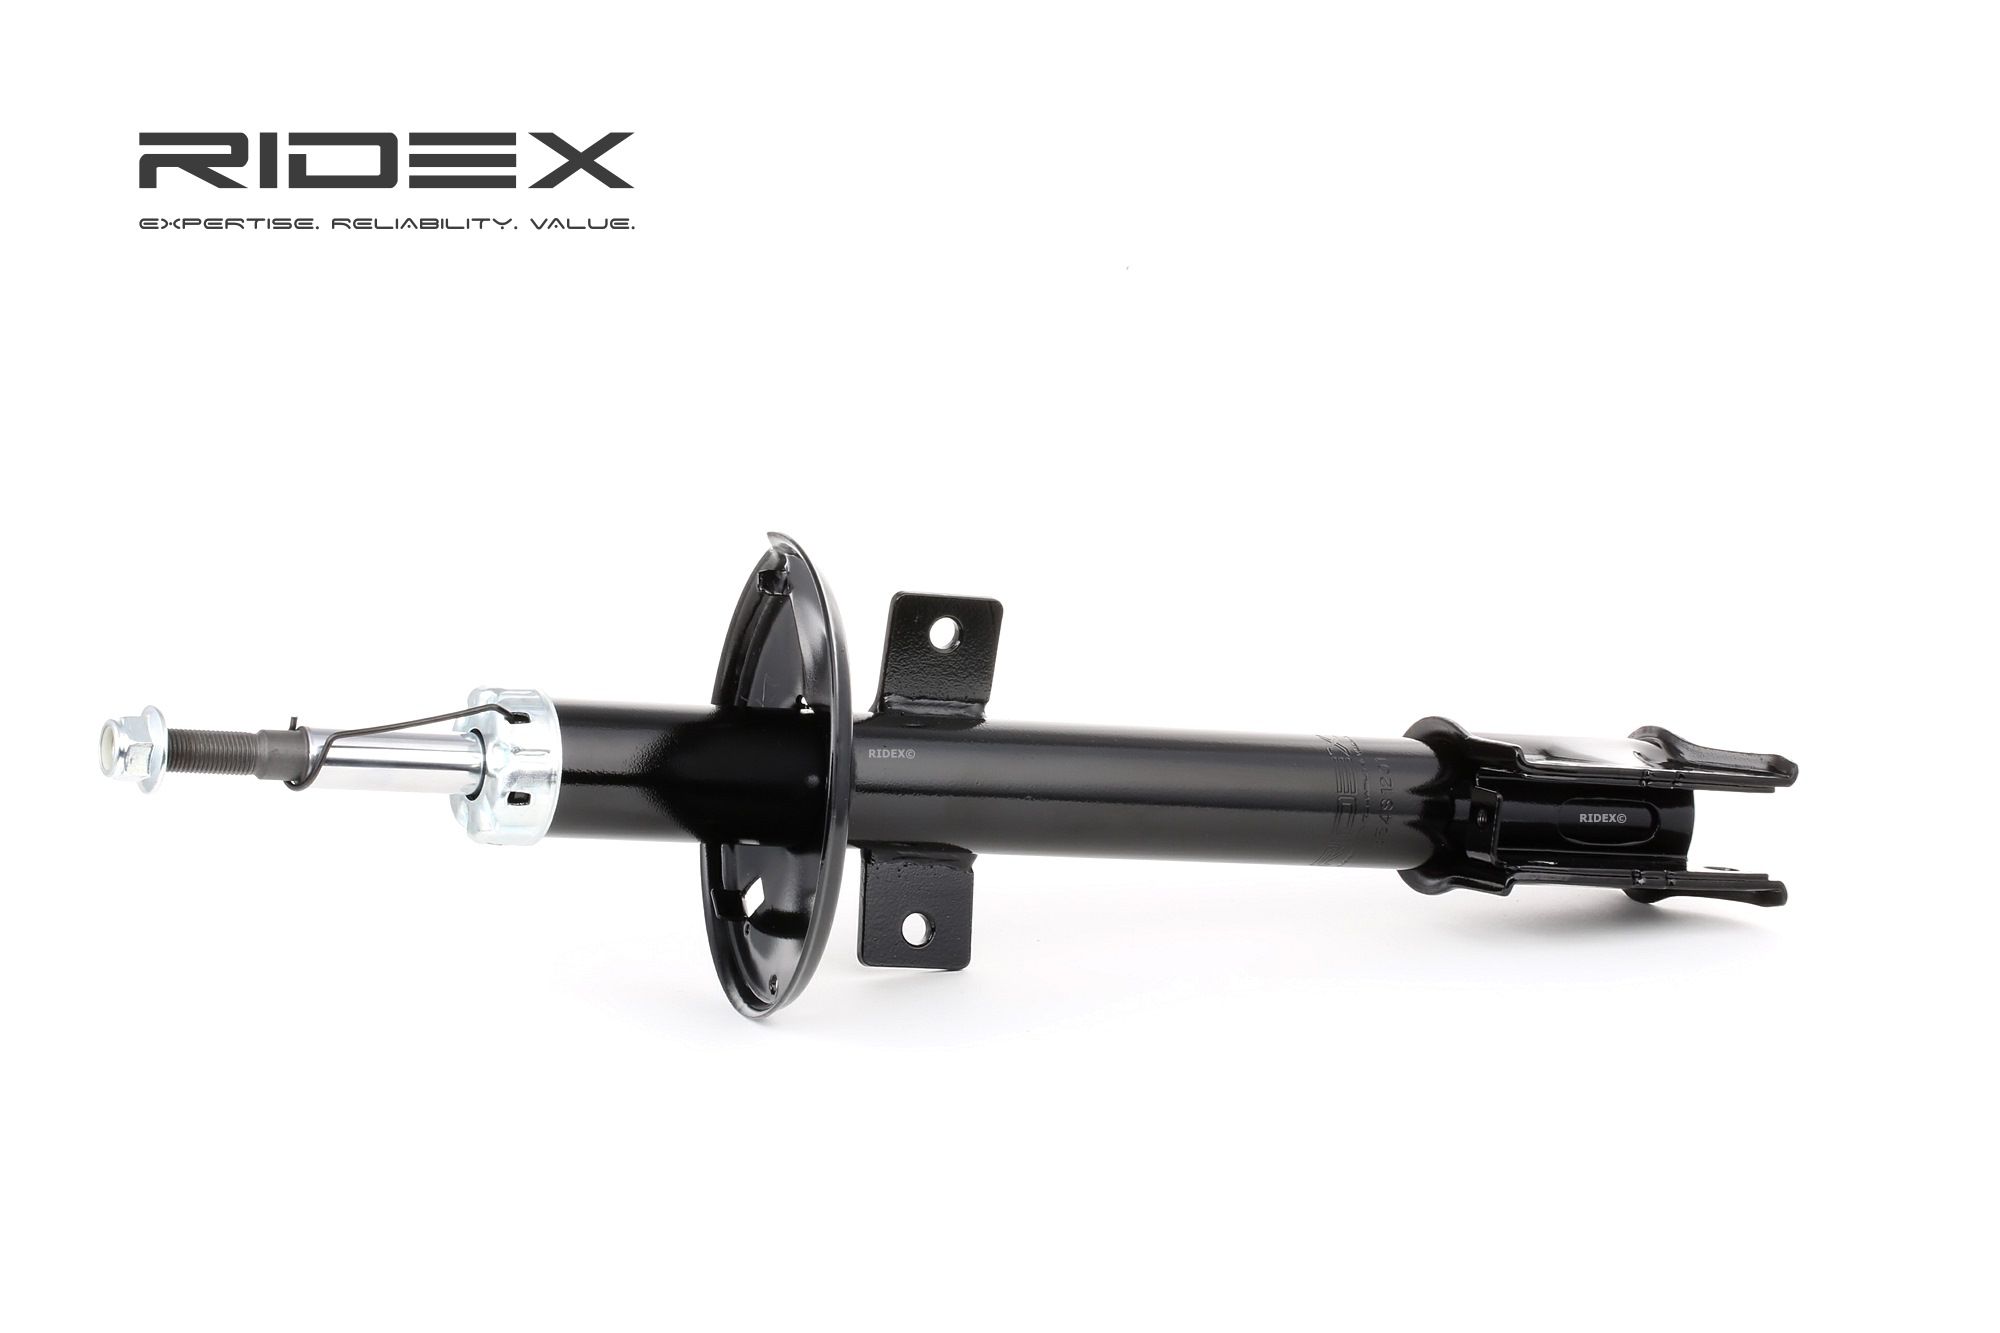 RIDEX 854S1201 DACIA Federbein komplett Hinterachse, Gasdruck, Zweirohr, Federbein, oben Stift, unten Schelle